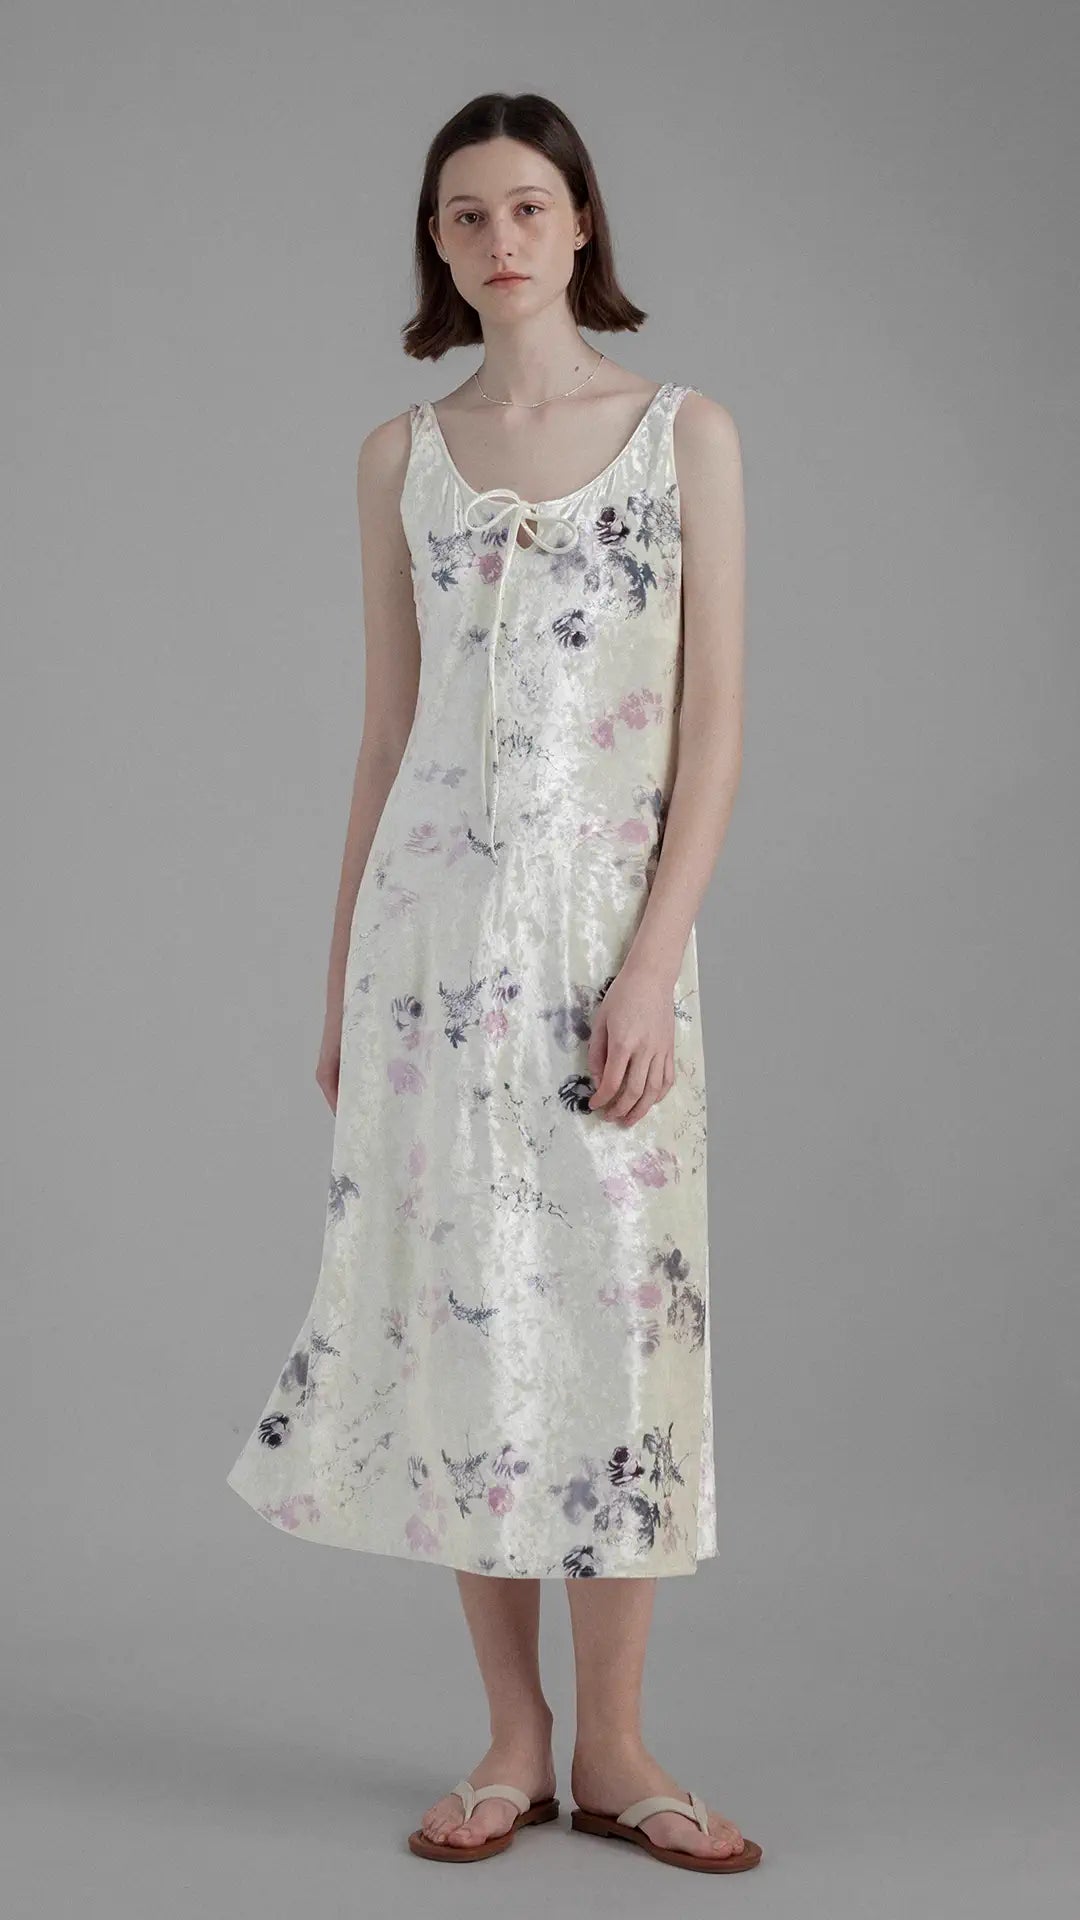 Romantic Floral Cinched Waist Strap Dress